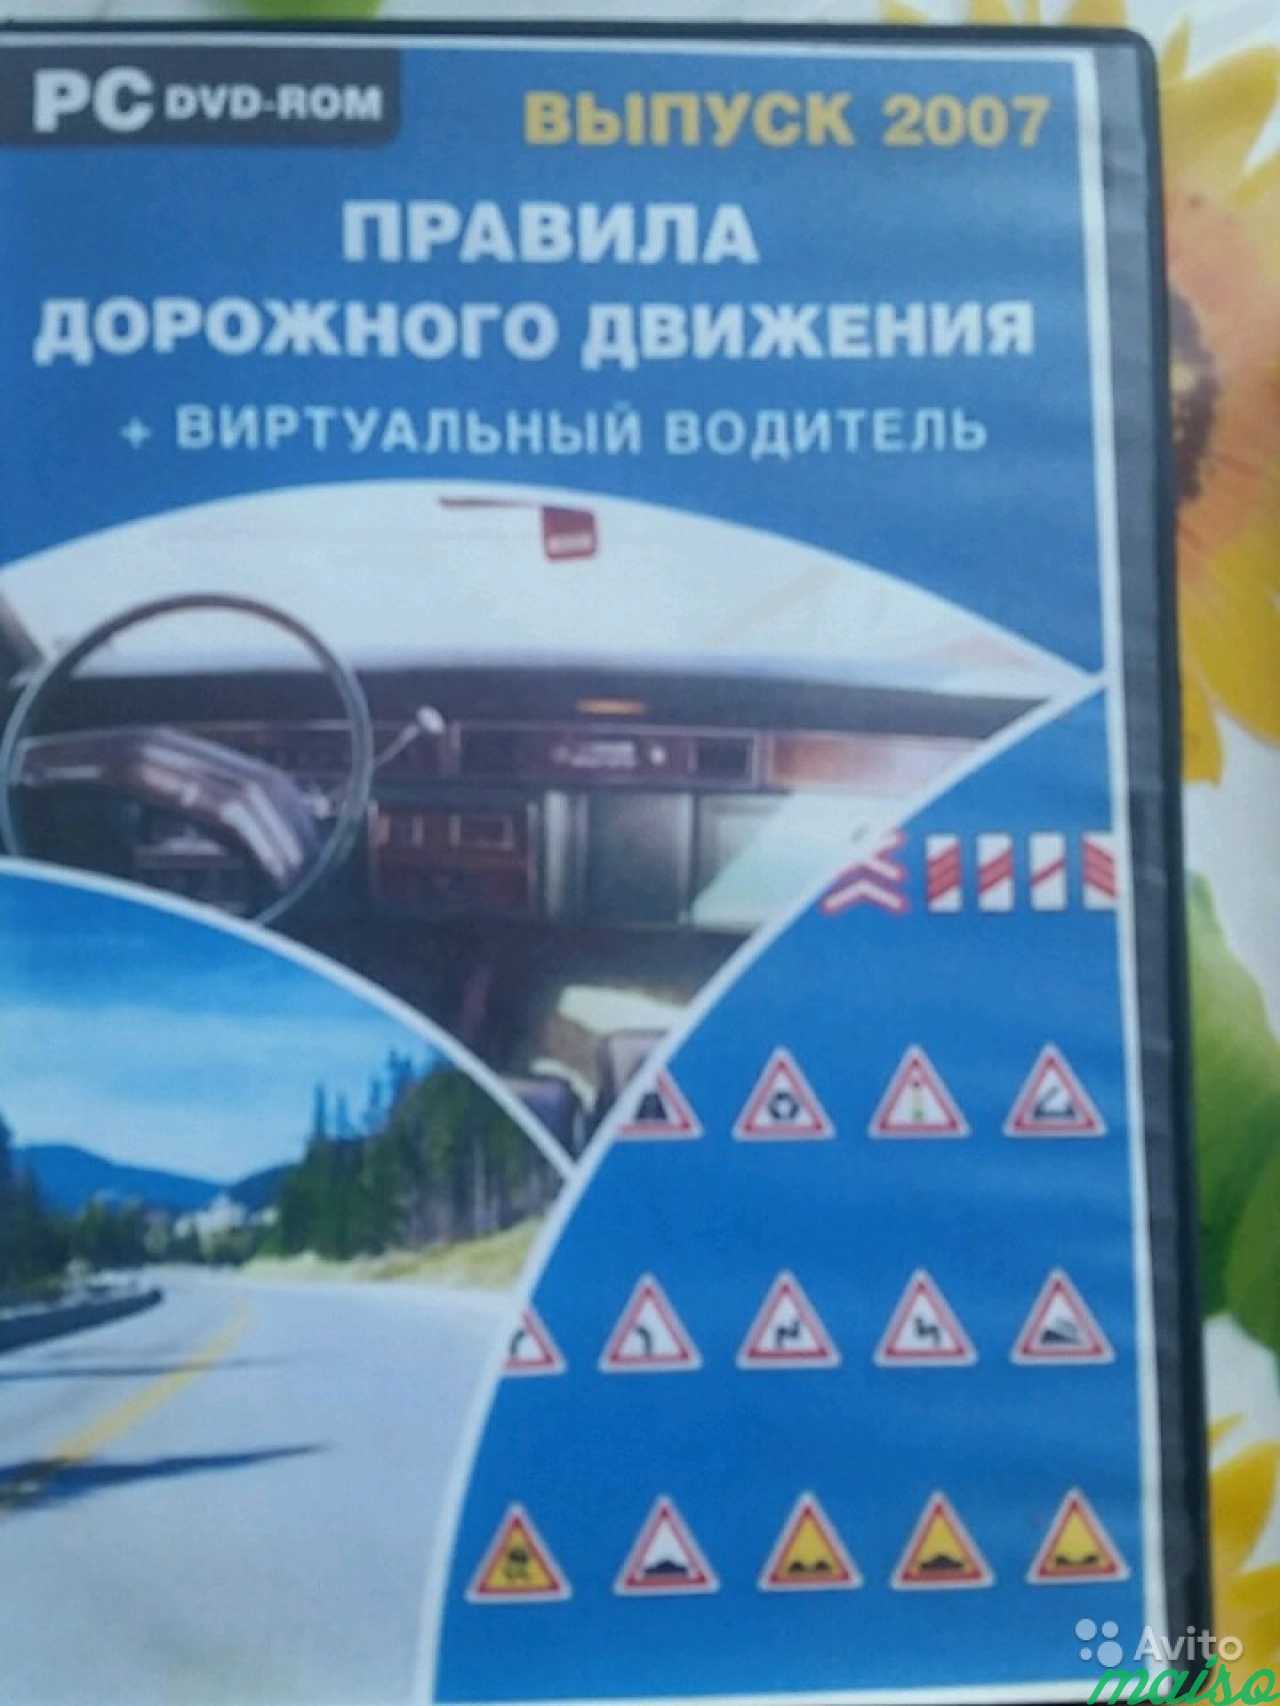 DVD-ROM вертуальный водитель в Санкт-Петербурге. Фото 1